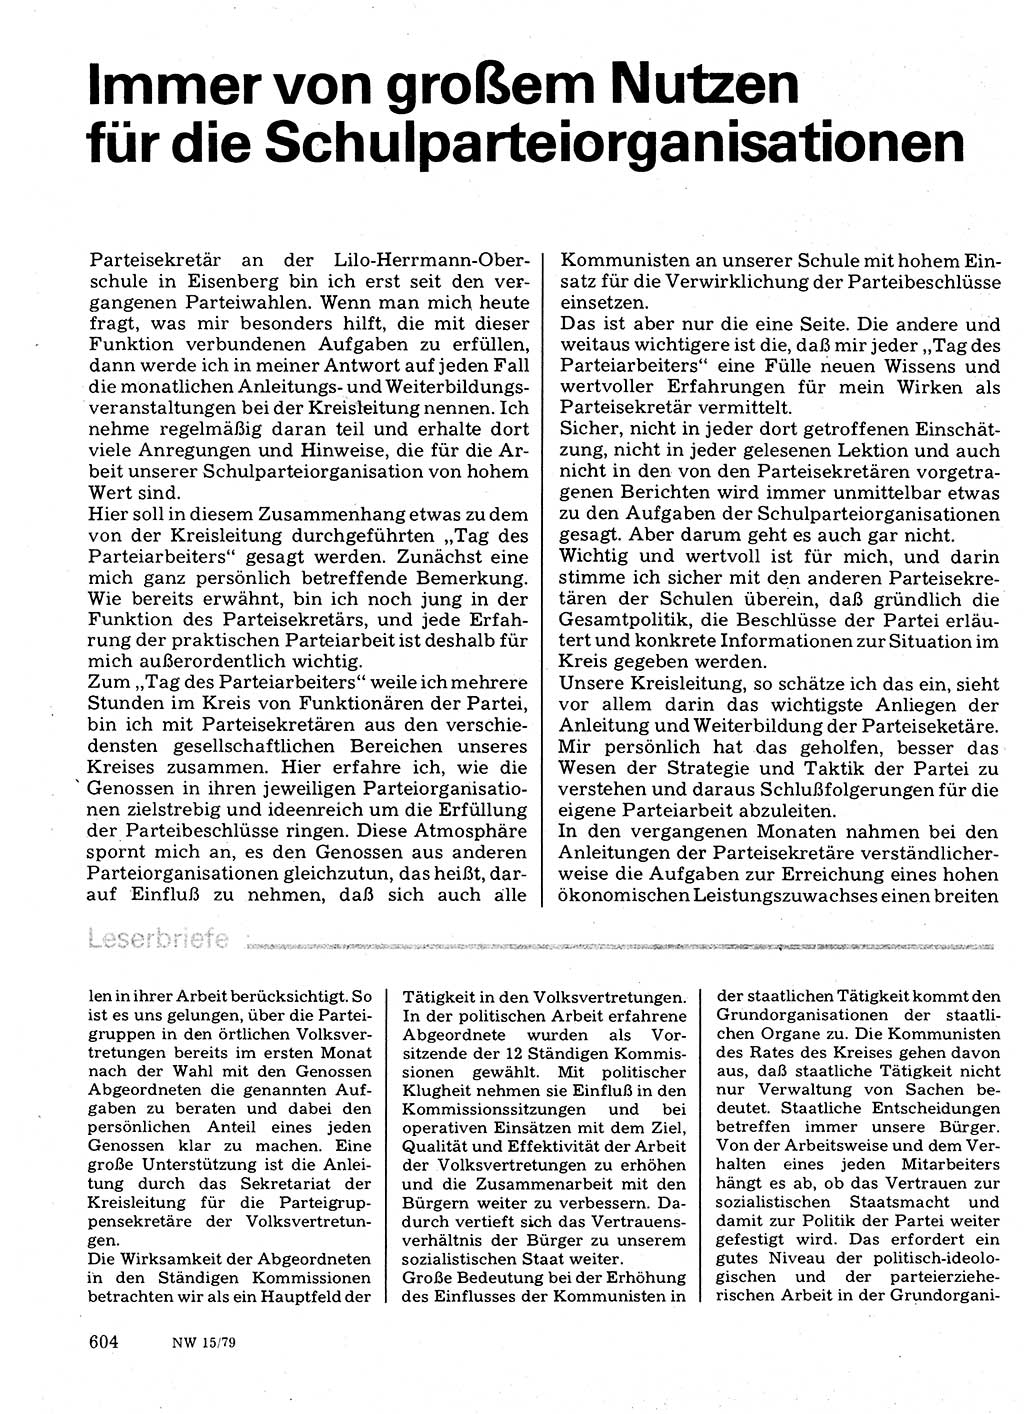 Neuer Weg (NW), Organ des Zentralkomitees (ZK) der SED (Sozialistische Einheitspartei Deutschlands) für Fragen des Parteilebens, 34. Jahrgang [Deutsche Demokratische Republik (DDR)] 1979, Seite 604 (NW ZK SED DDR 1979, S. 604)